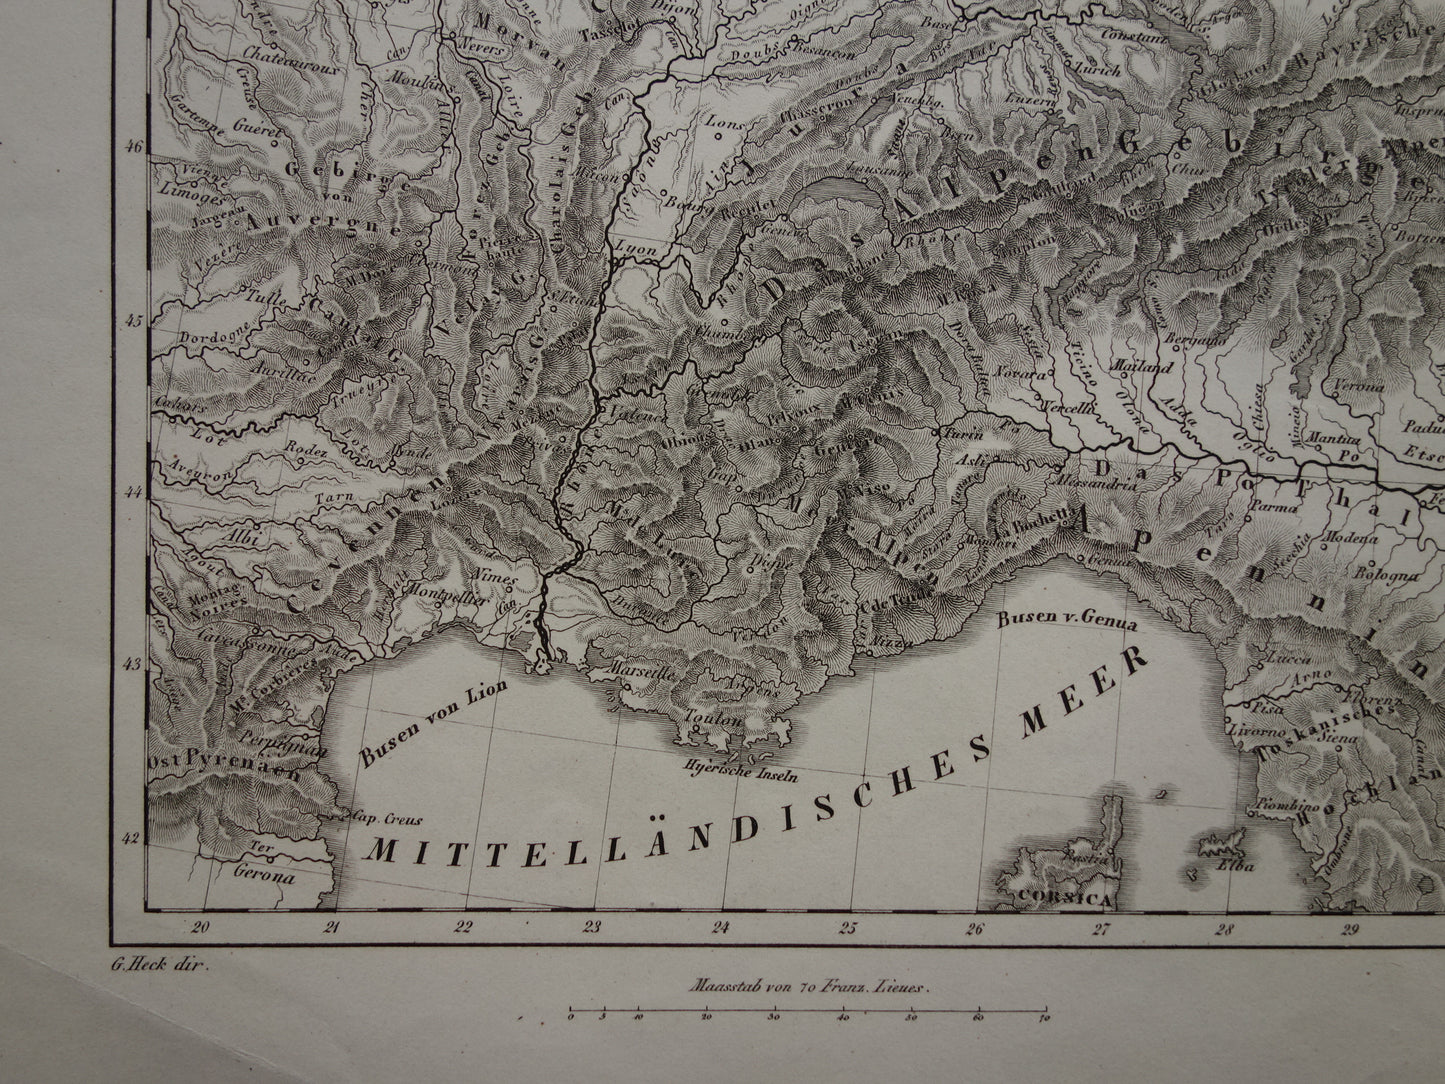 MIDDEN-EUROPA oude landkaart van rivieren en gebergten uit 1849 originele vintage historische kaarten Duitsland Oostenrijk Zwitserland Alpen bergen hoogtekaart